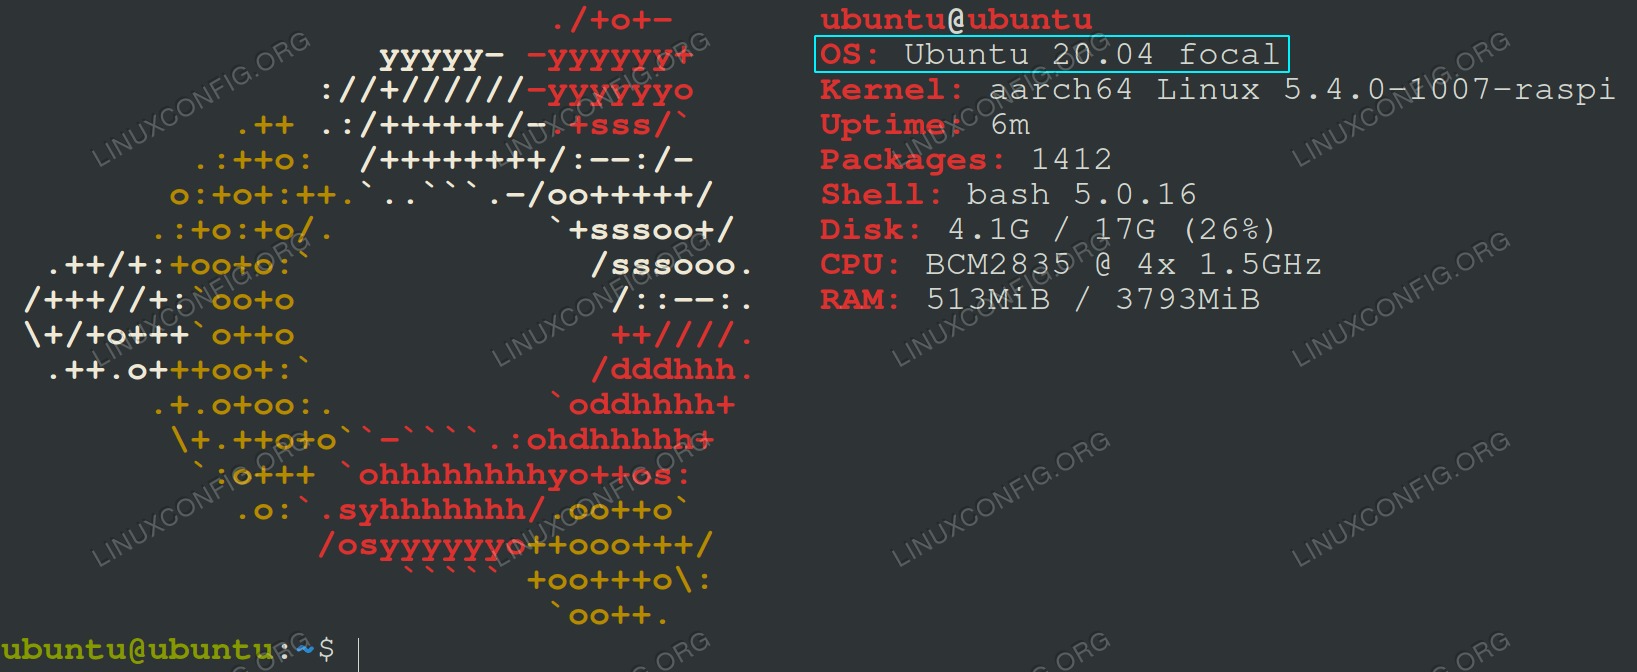 Upgrading Raspberry Pi to Ubuntu 20.04